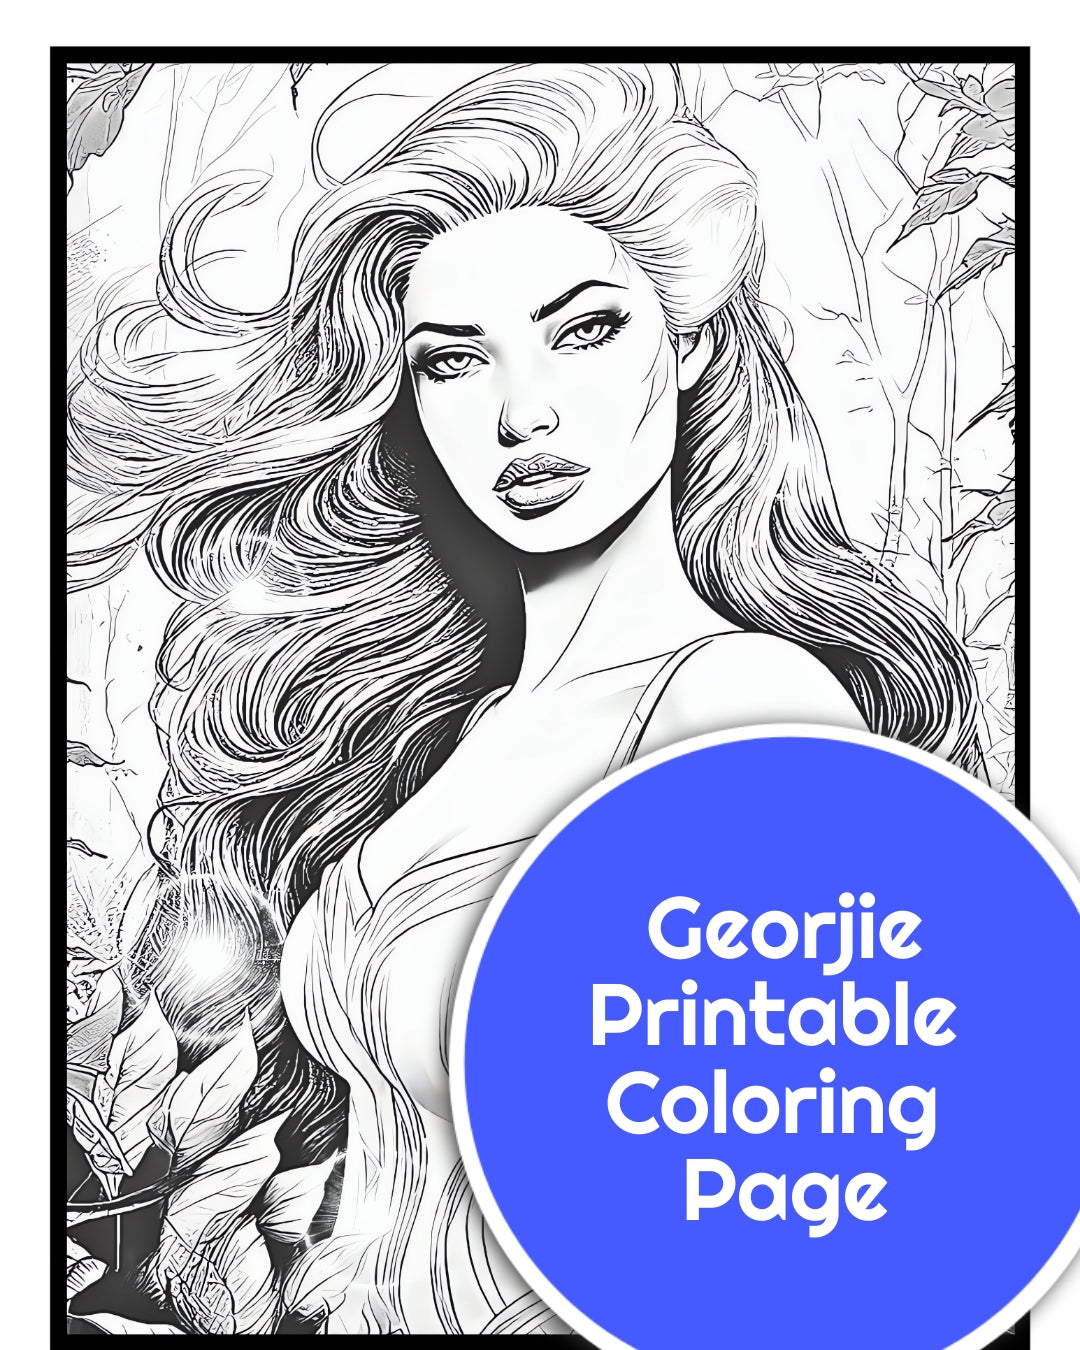 Georjie printable coloring page